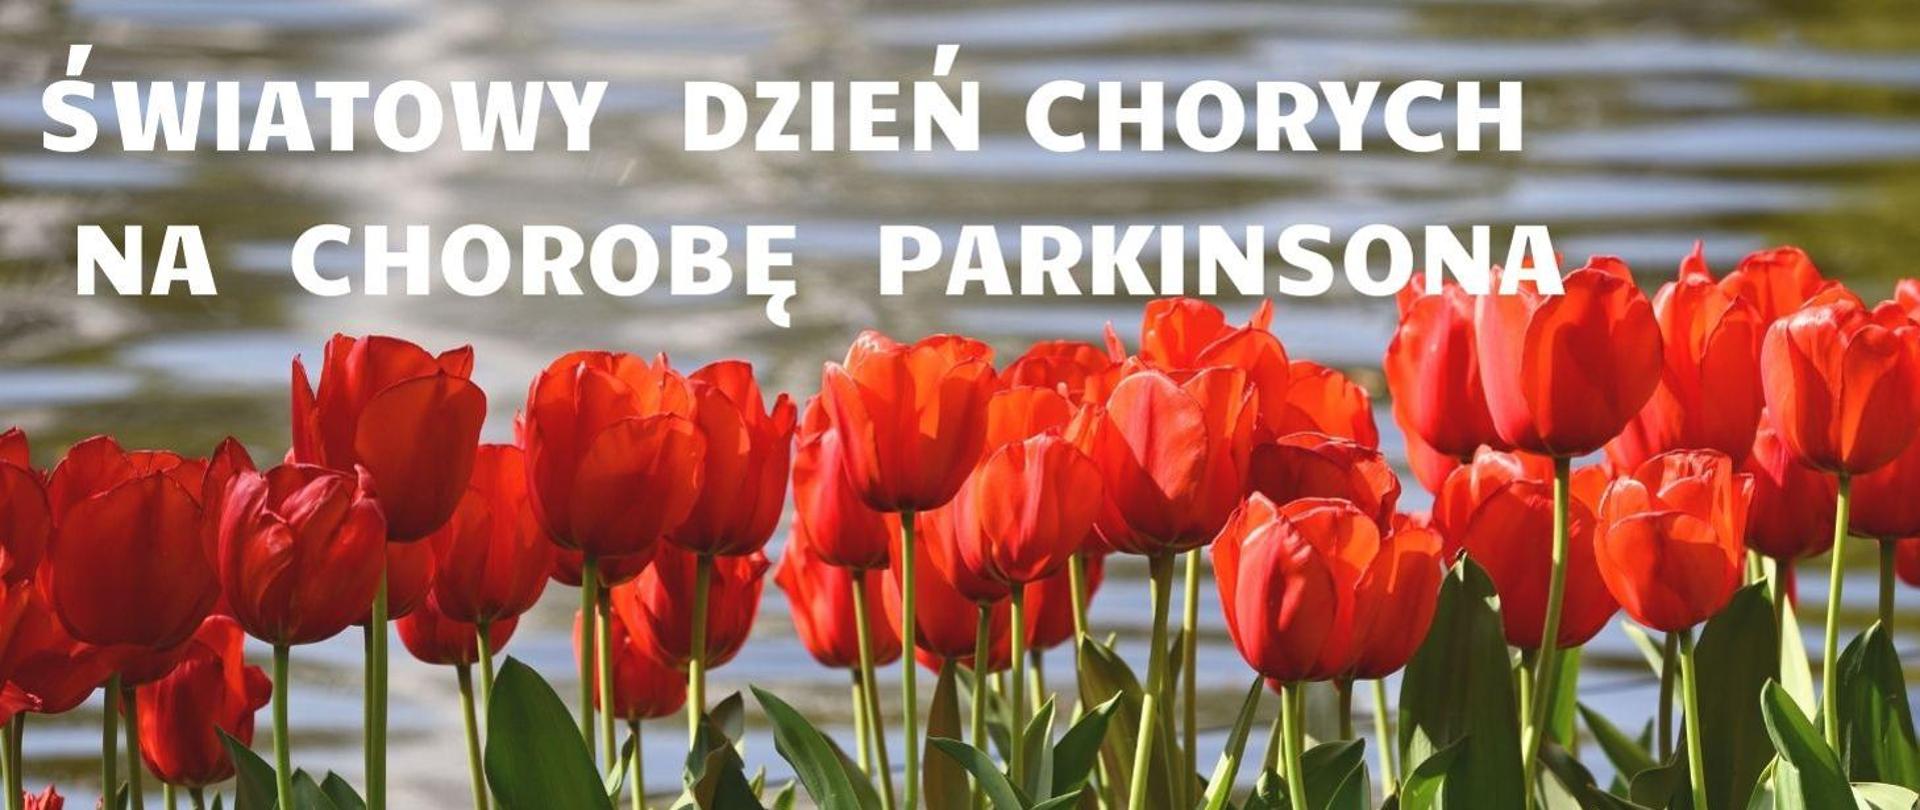 Czerwone tulipany, a nad nimi napis "Światowy Dzień Chorych na Chorobę Parkinsona"